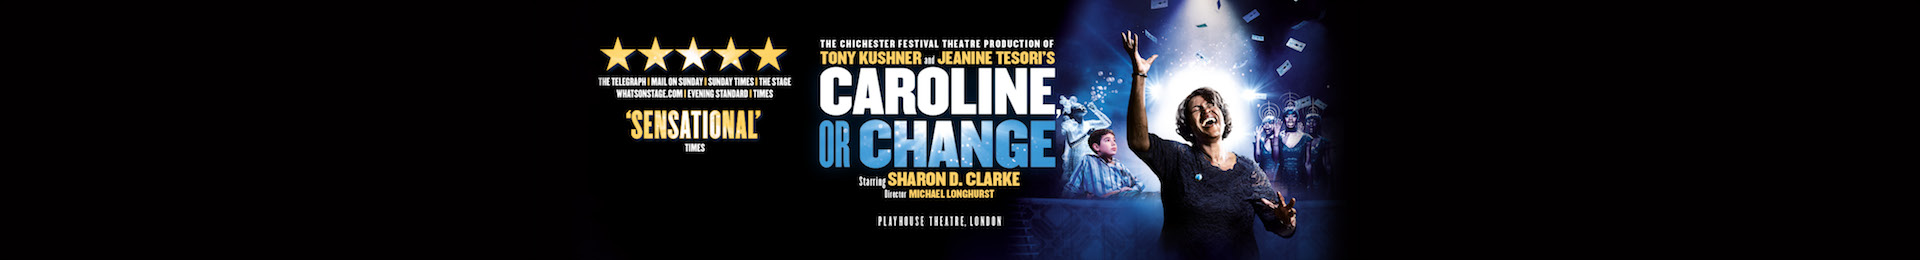 Caroline, or Change banner image